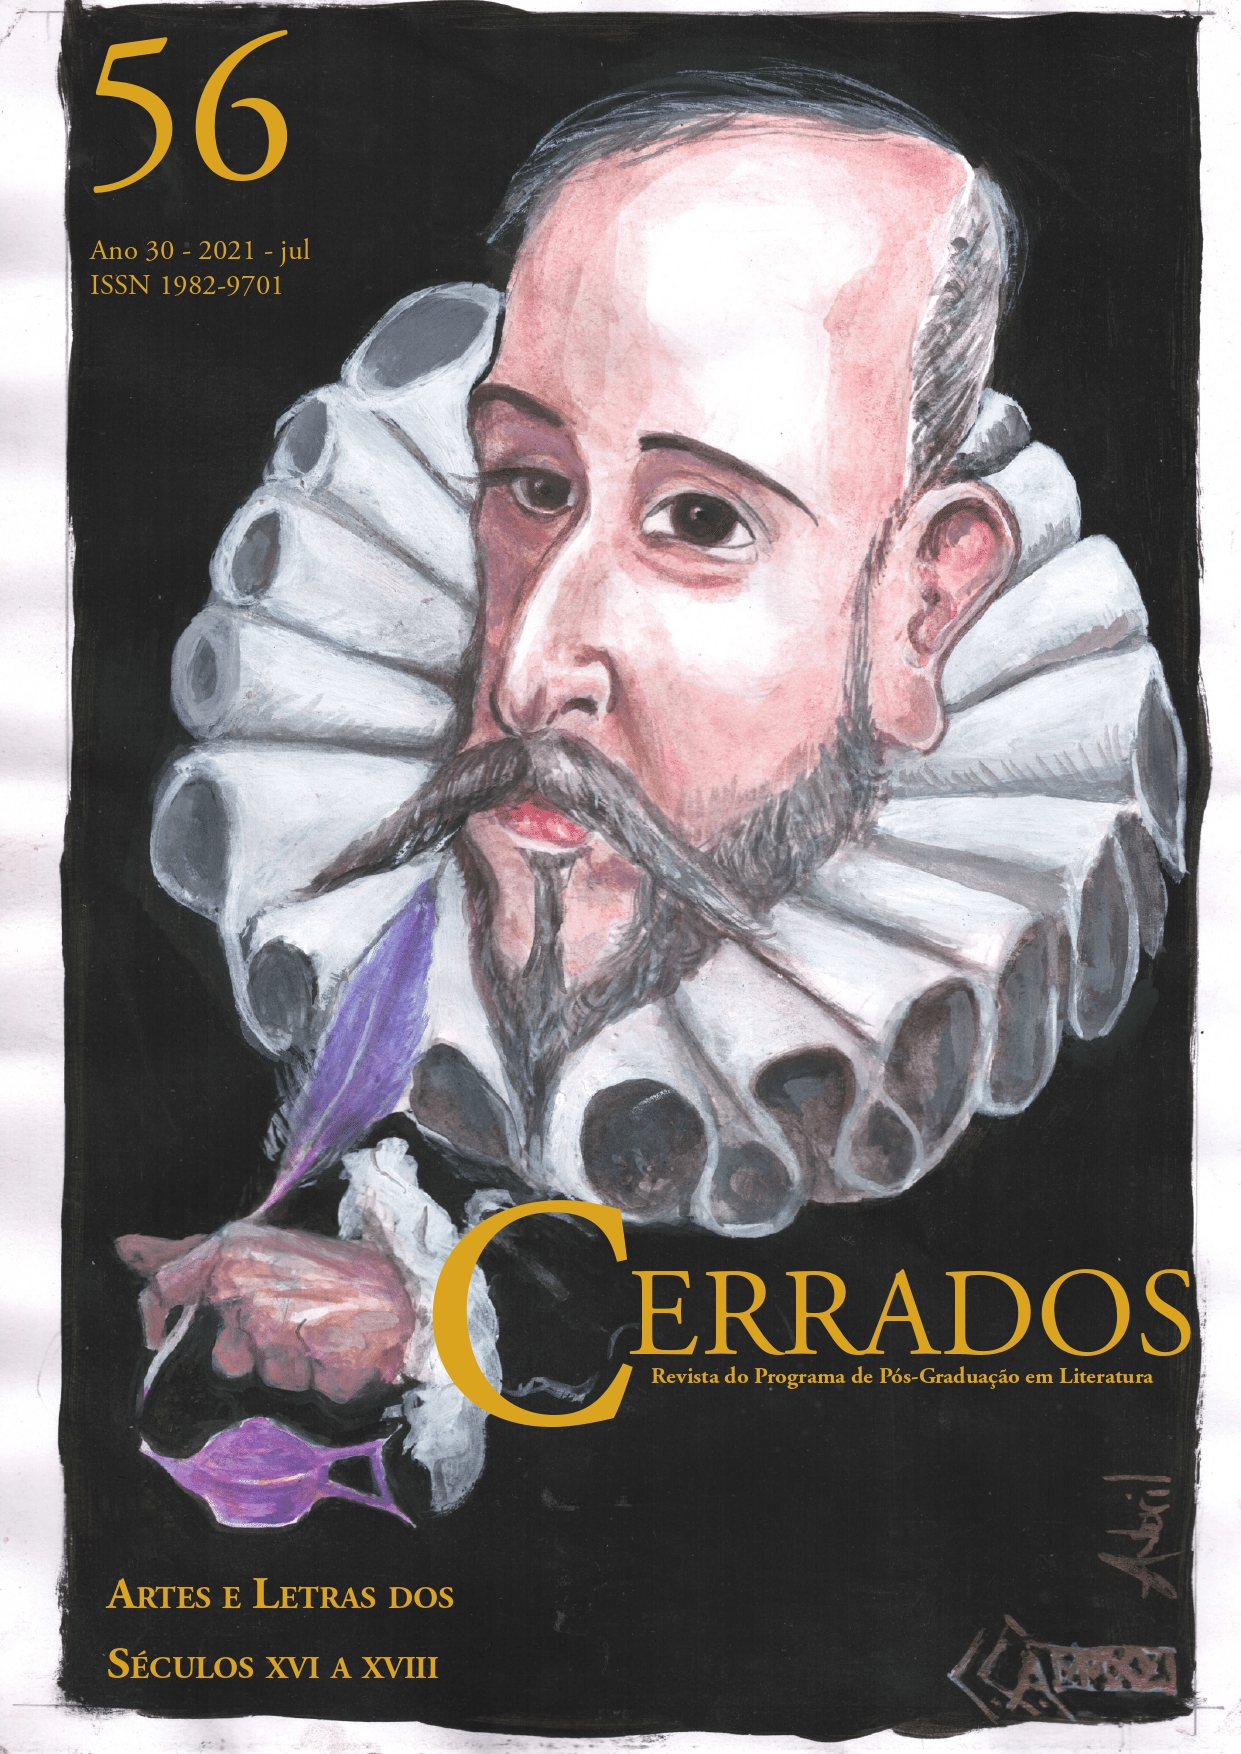 Imagem da capa: Carlos Costa Ávila, Interpretação gráfica de retrato de Góngora I Aquarela e guache, sobre papel, 21cm-29,7cm